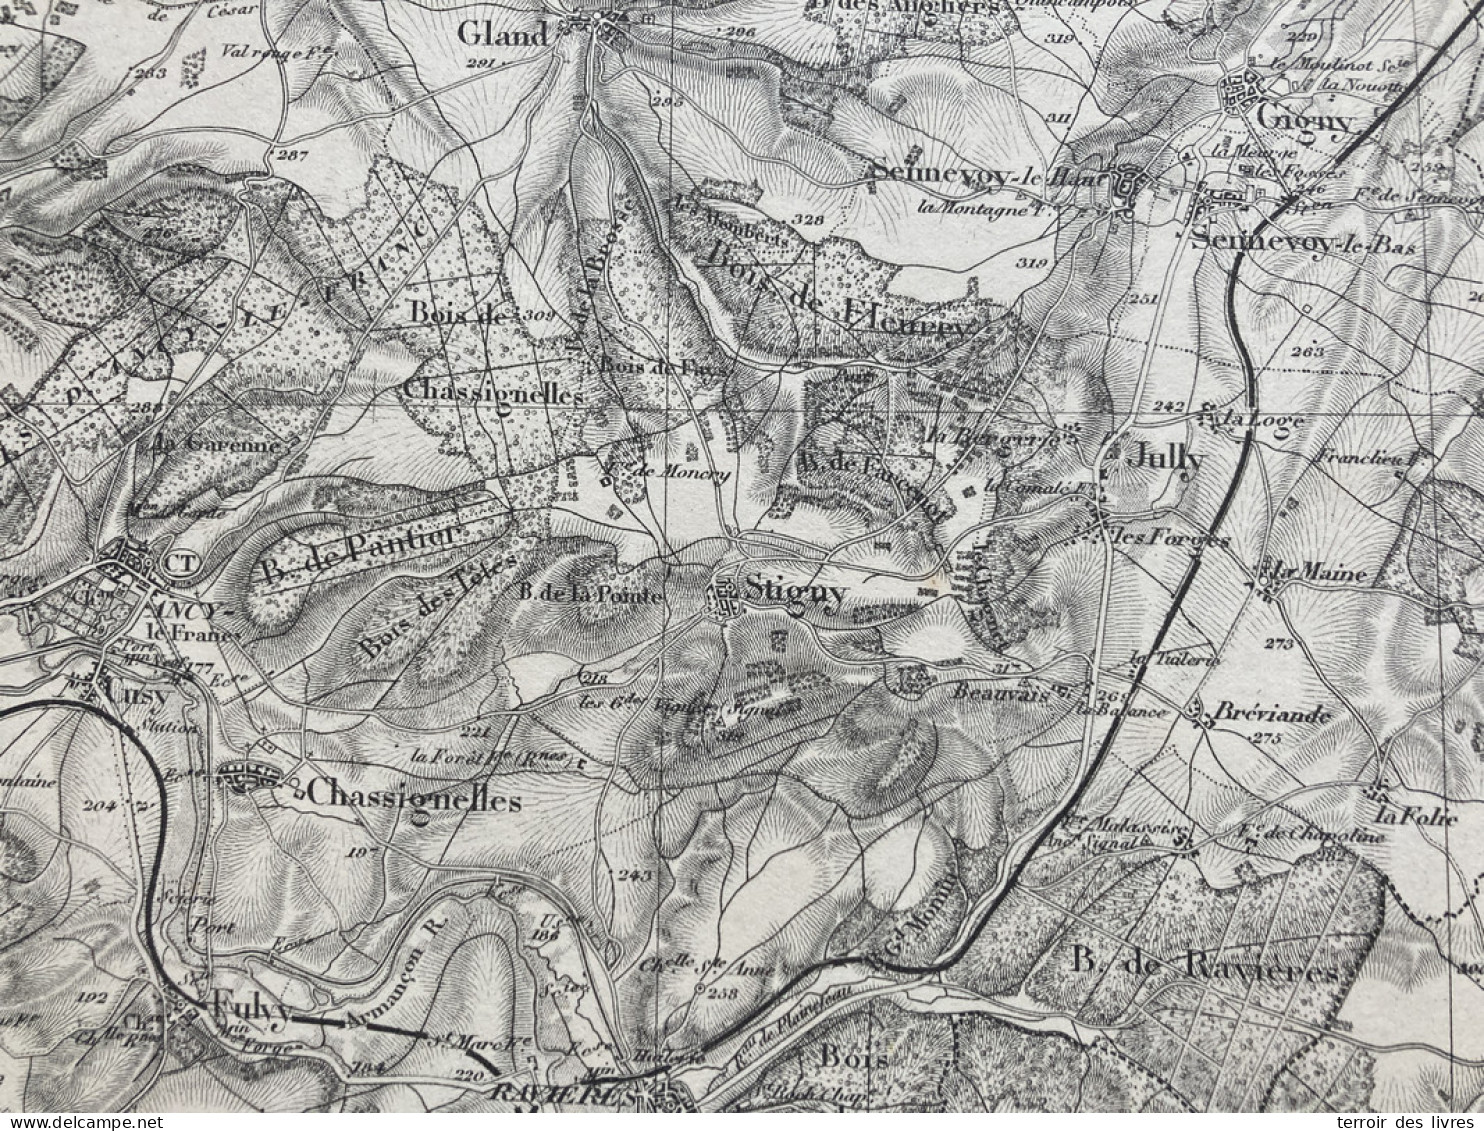 Carte état Major TONNERRE S.E. 1890 35x54cm JULLY SENNEVOY-LE-BAS SENNEVOY-LE-HAUT FONTAINES-LES-SECHES GIGNY STIGNY VER - Cartes Géographiques